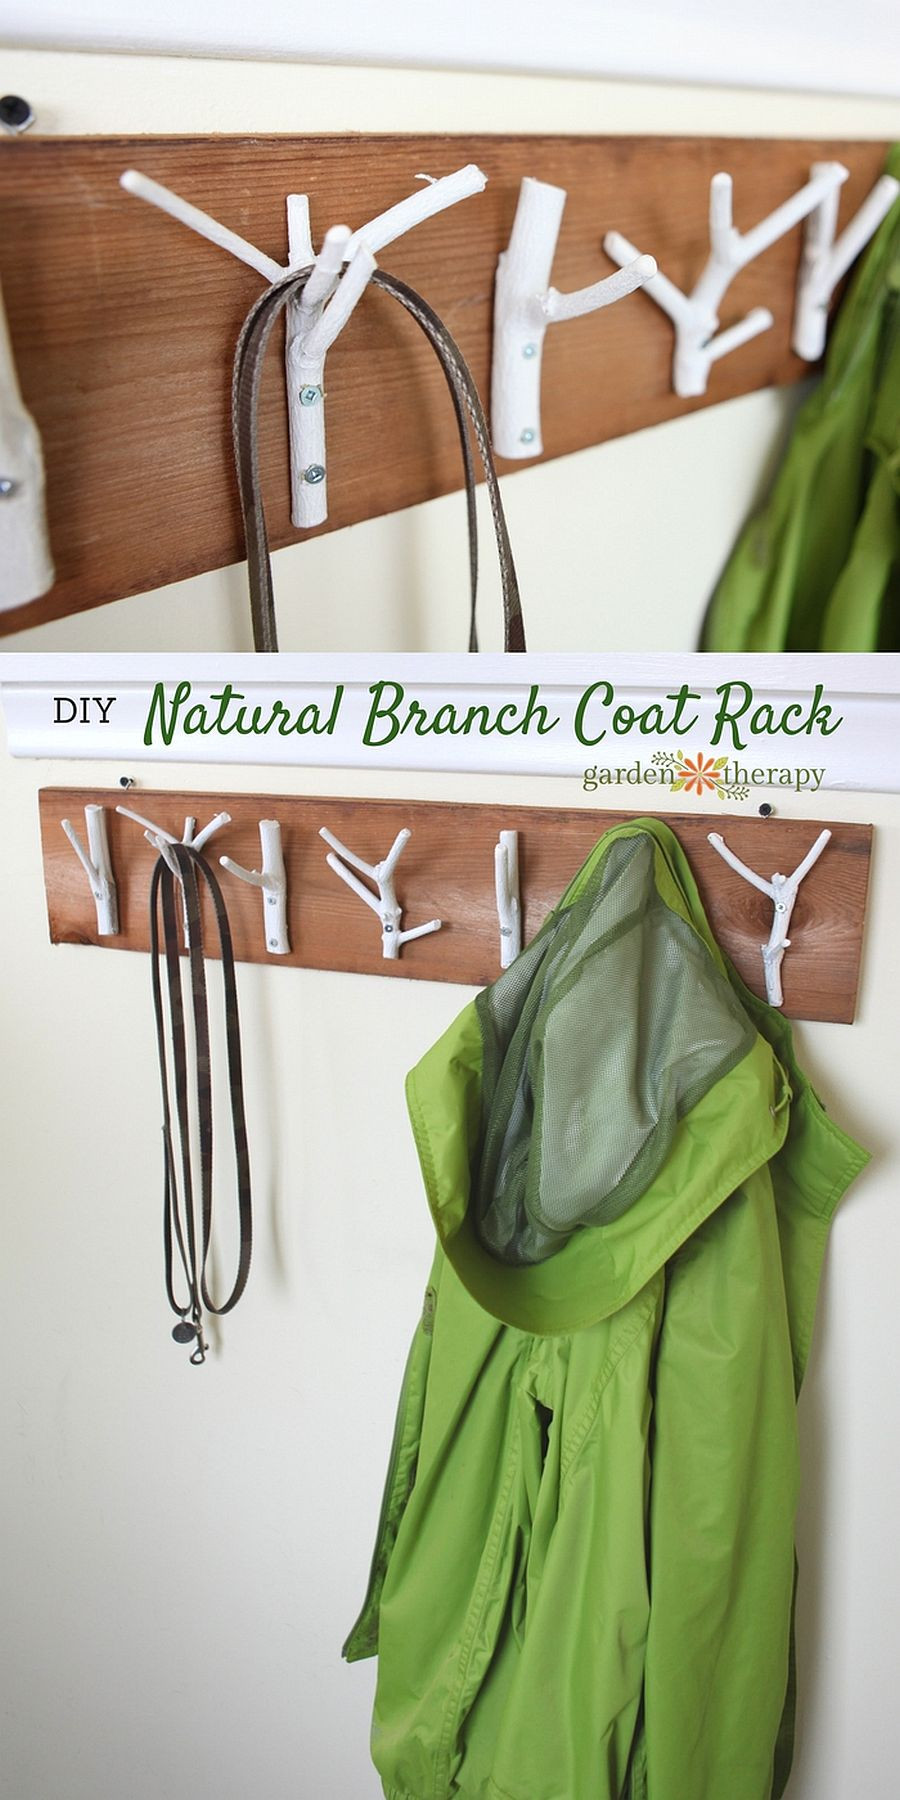 Coat Rack DIY
 15 DIY Coat Rack Ideas that are Easy and Fun